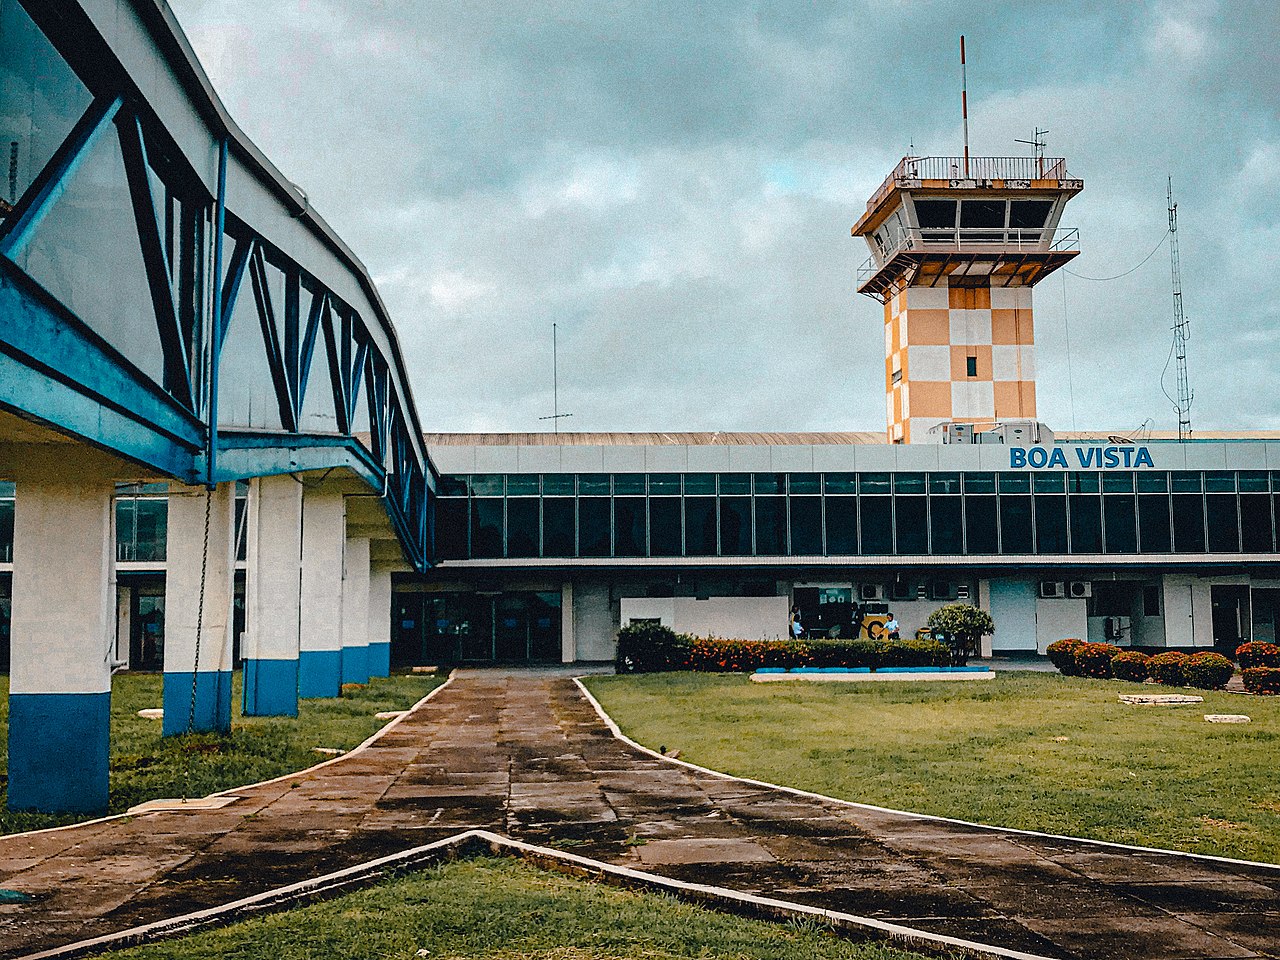 Ampliação do aeroporto de Boa Vista (RR) avança com nova etapa